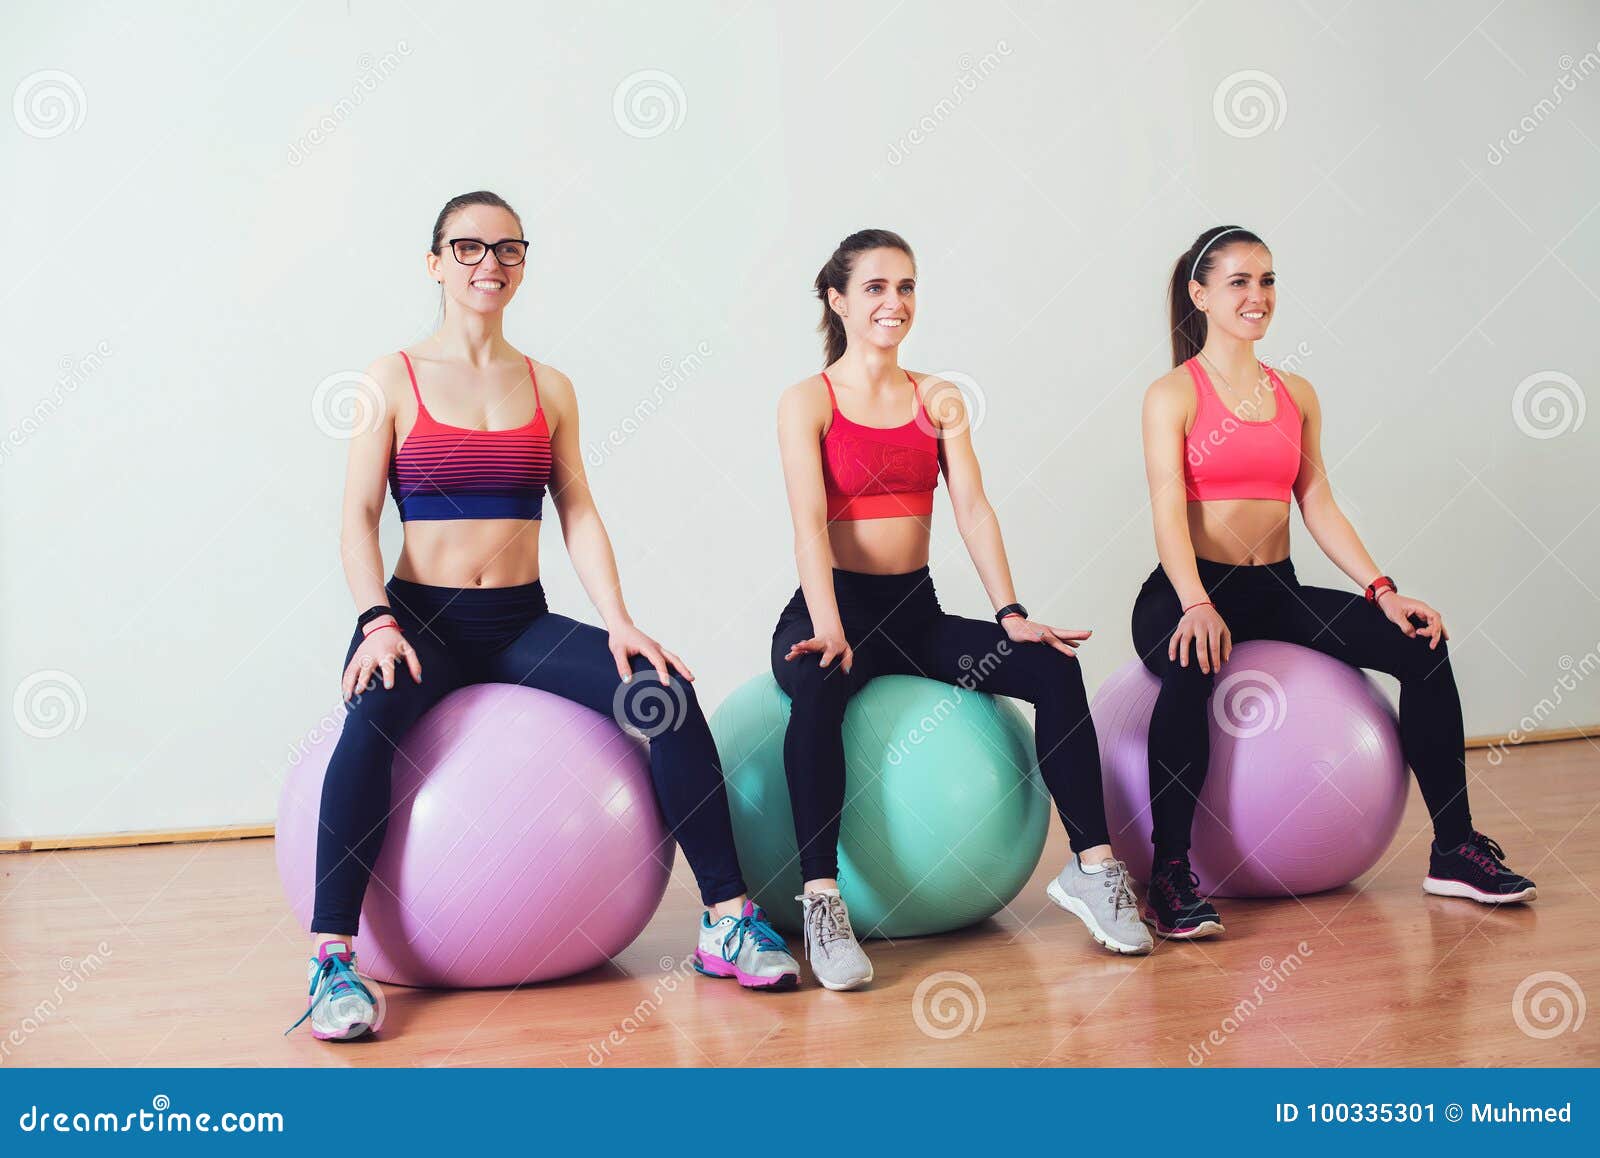 Шар идеальная форма. Тренировки на шарике в зале женщины. Идеальная фигура шар. Моя фигура идеальный шар. Девушка на шаре сидит в спортзале.